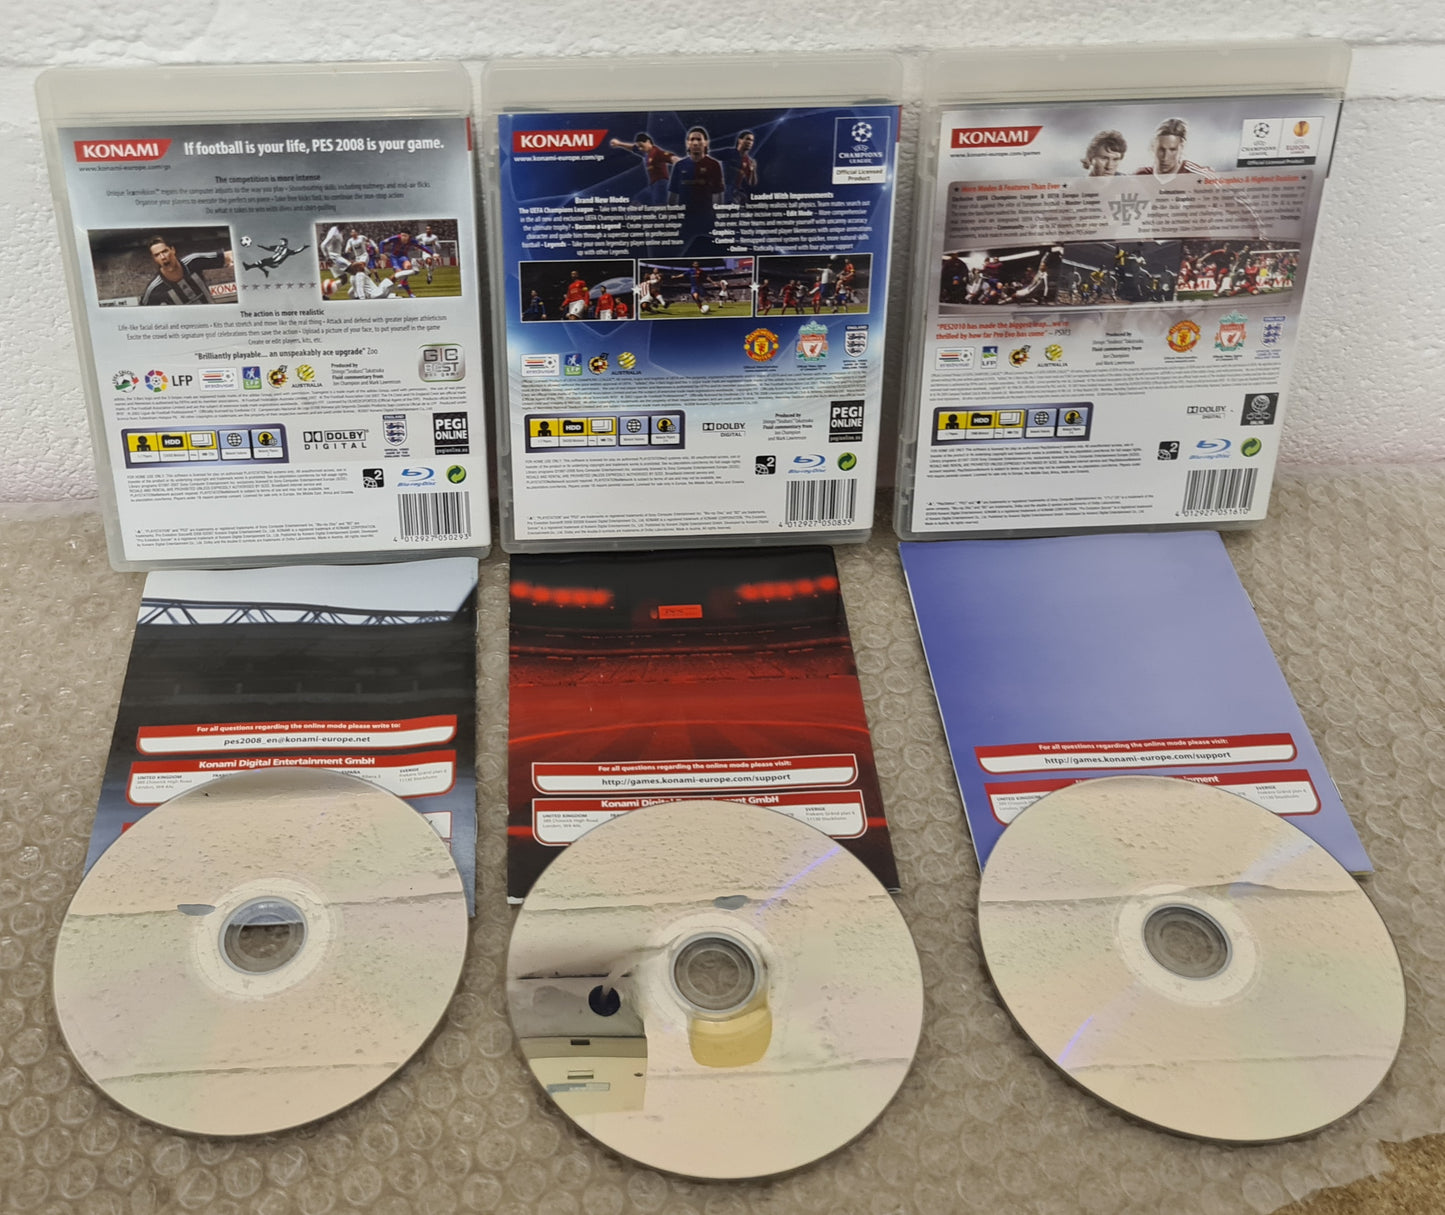 PES Pro Evolution Soccer 2008 - 2010 Sony Playstation 3 (PS3) Game Bundle